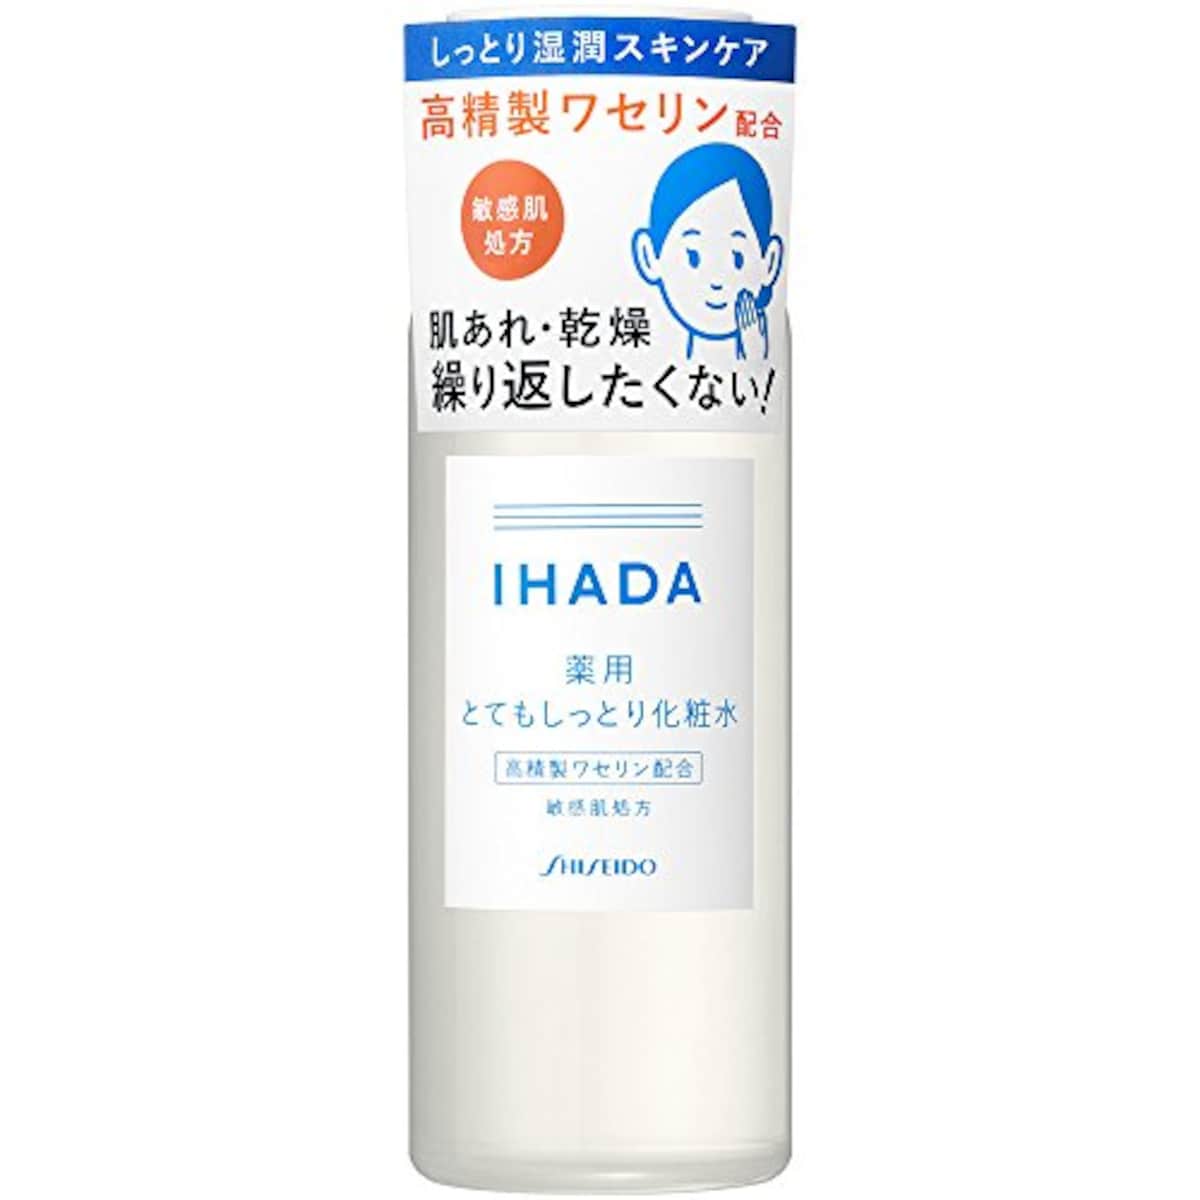 IHADA(イハダ) 薬用とてもしっとり化粧水